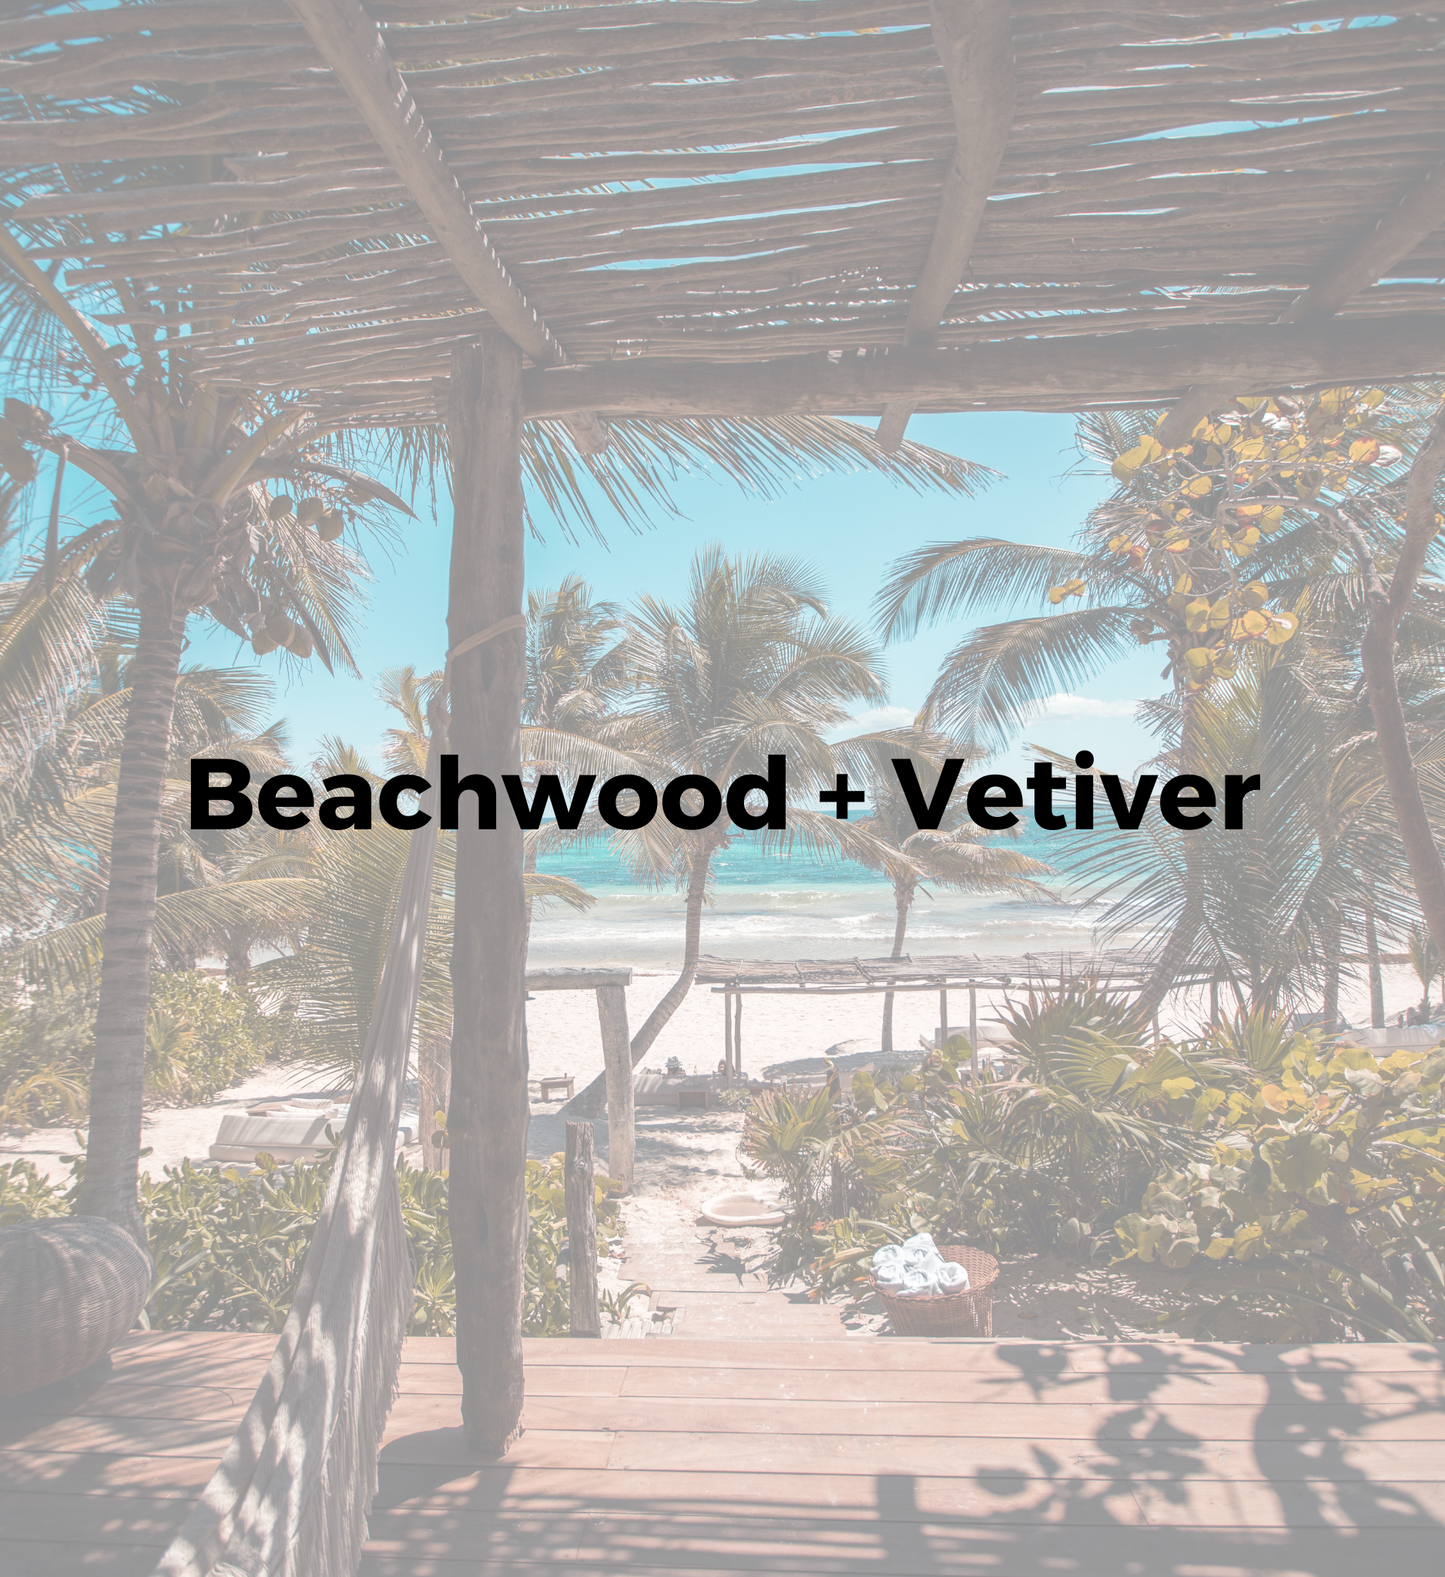 Beachwood + Vetiver